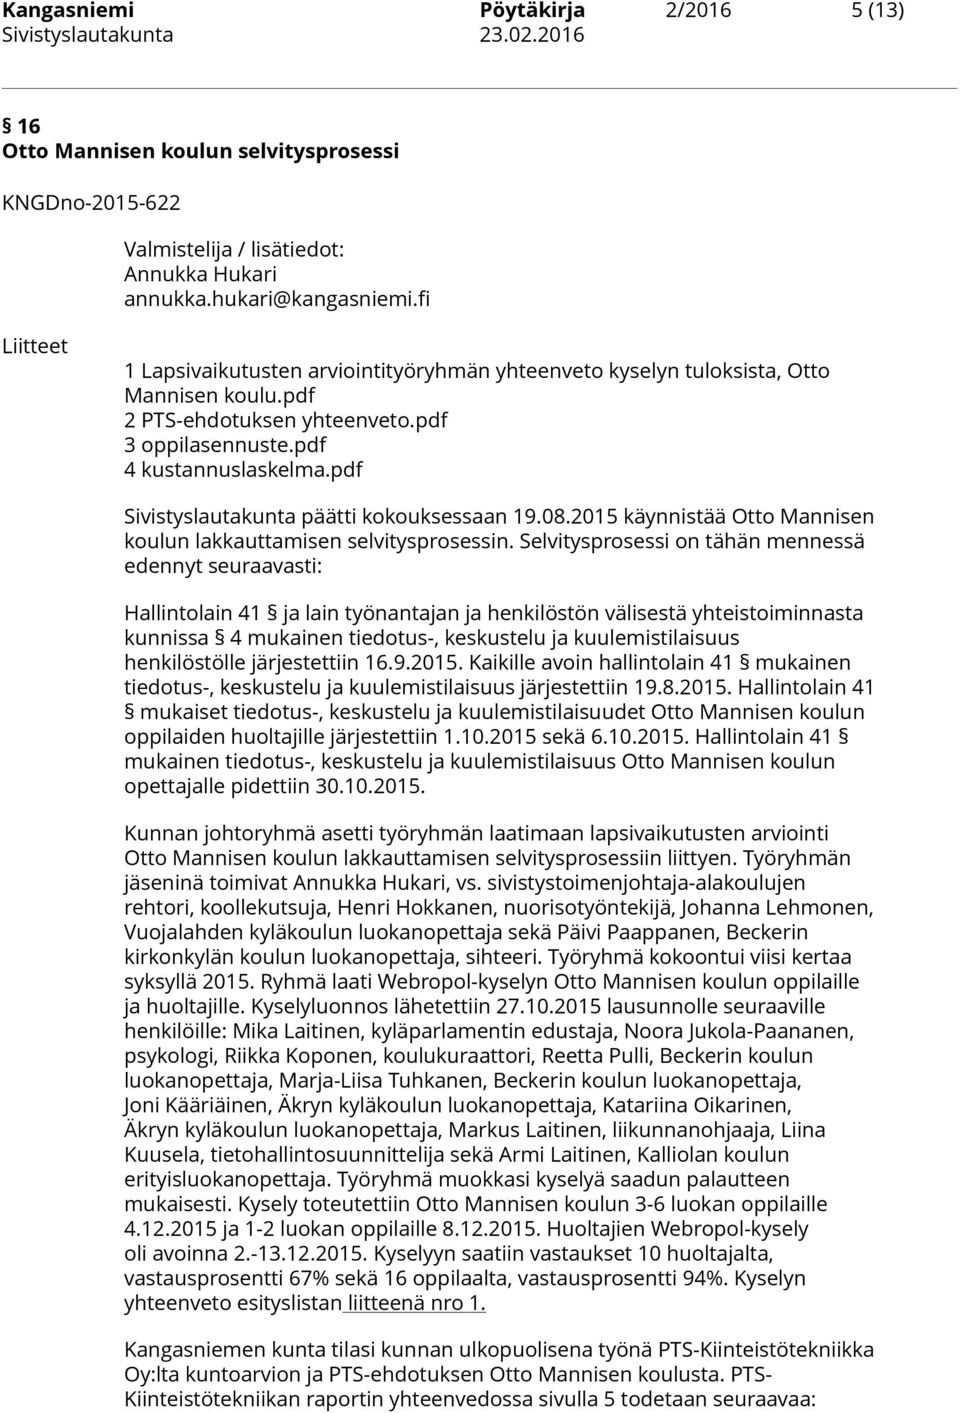 pdf Sivistyslautakunta päätti kokouksessaan 19.08.2015 käynnistää Otto Mannisen koulun lakkauttamisen selvitysprosessin.